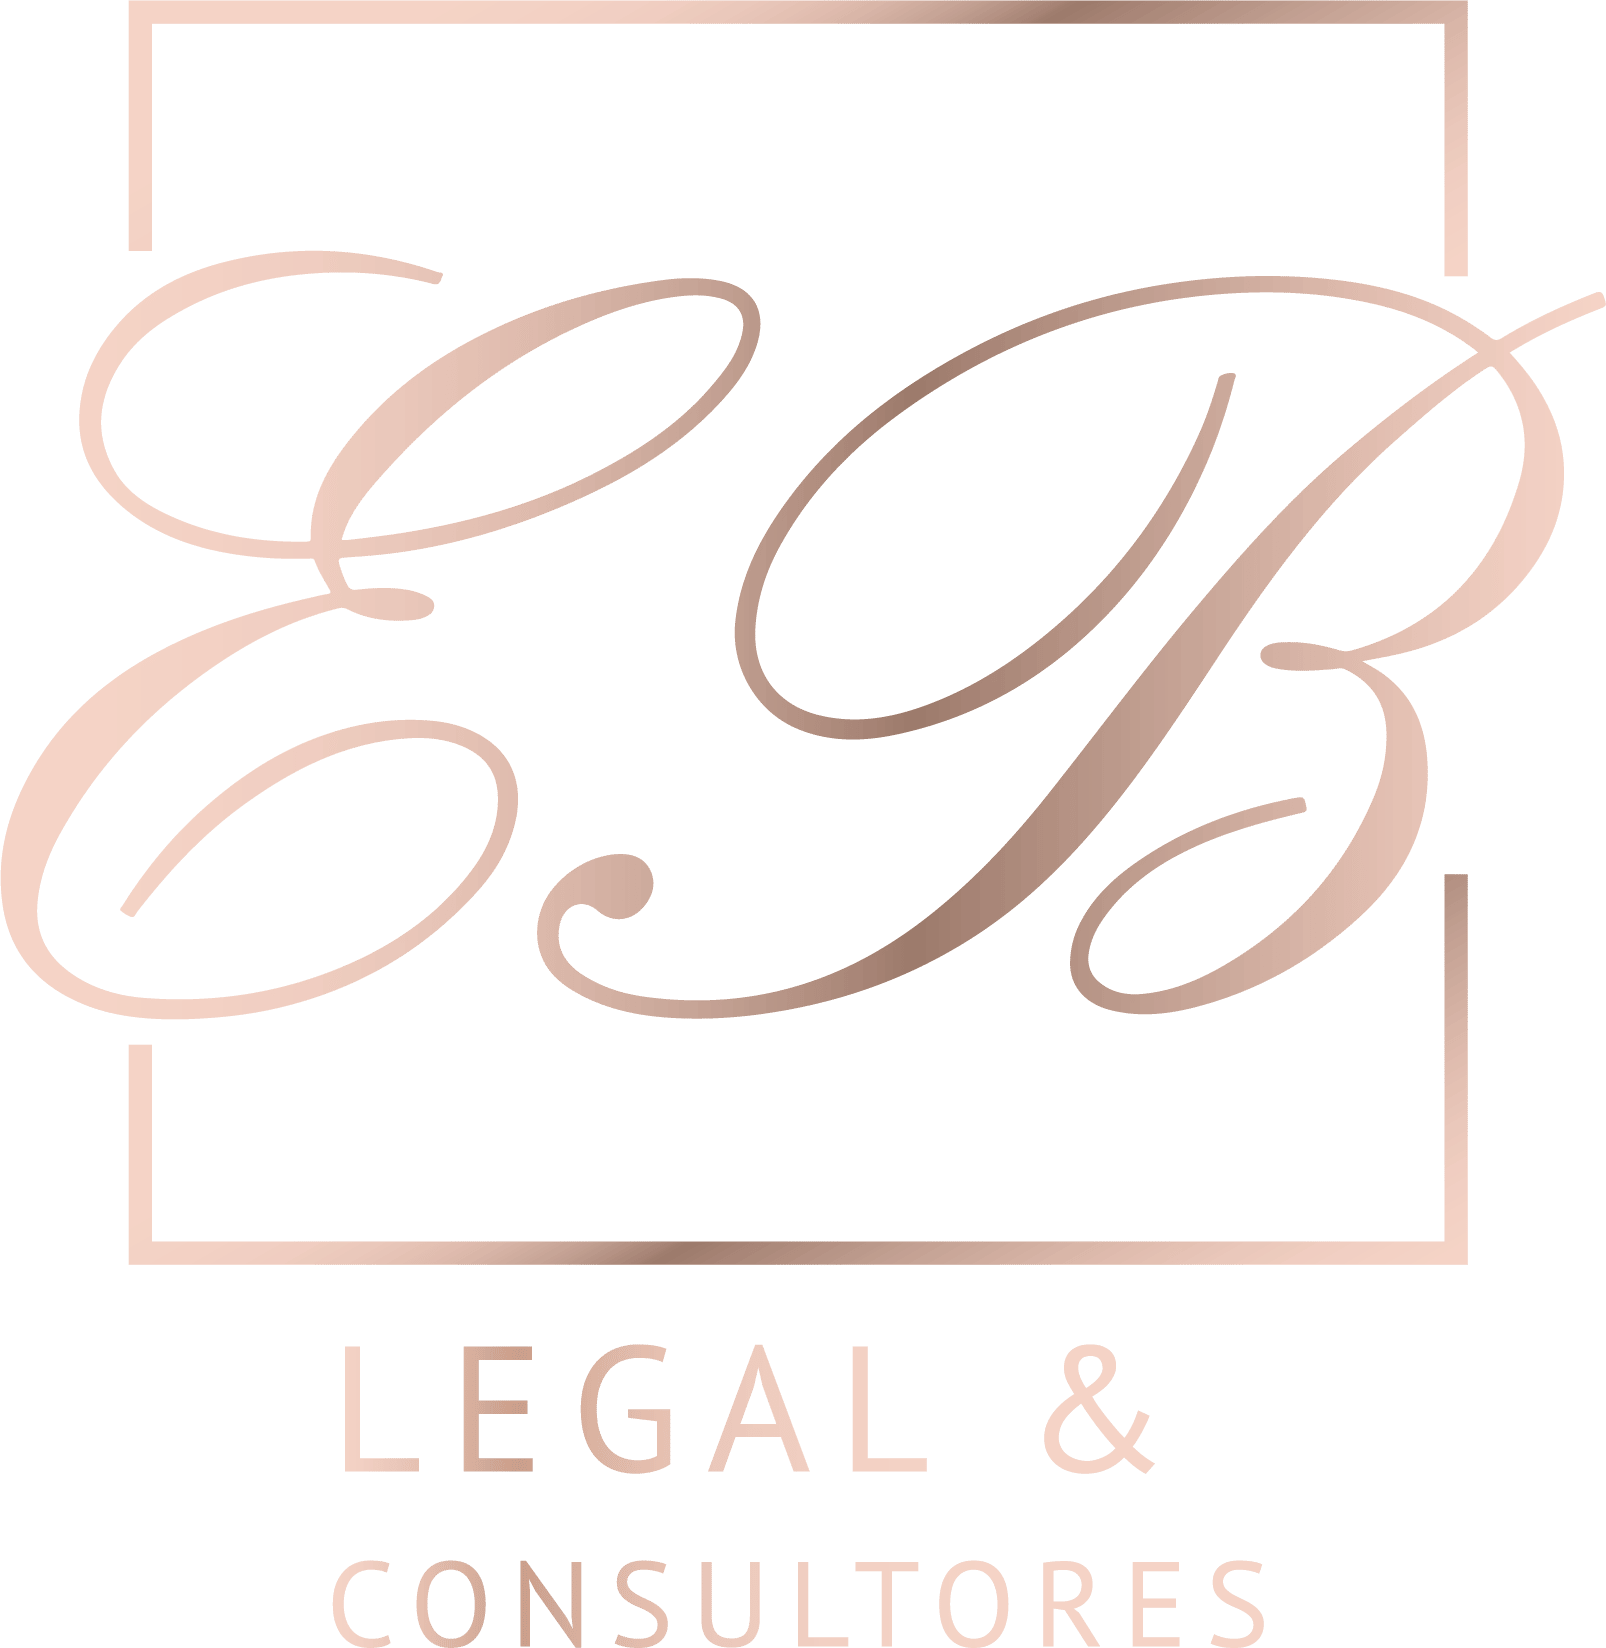 EB Legal & Consultores